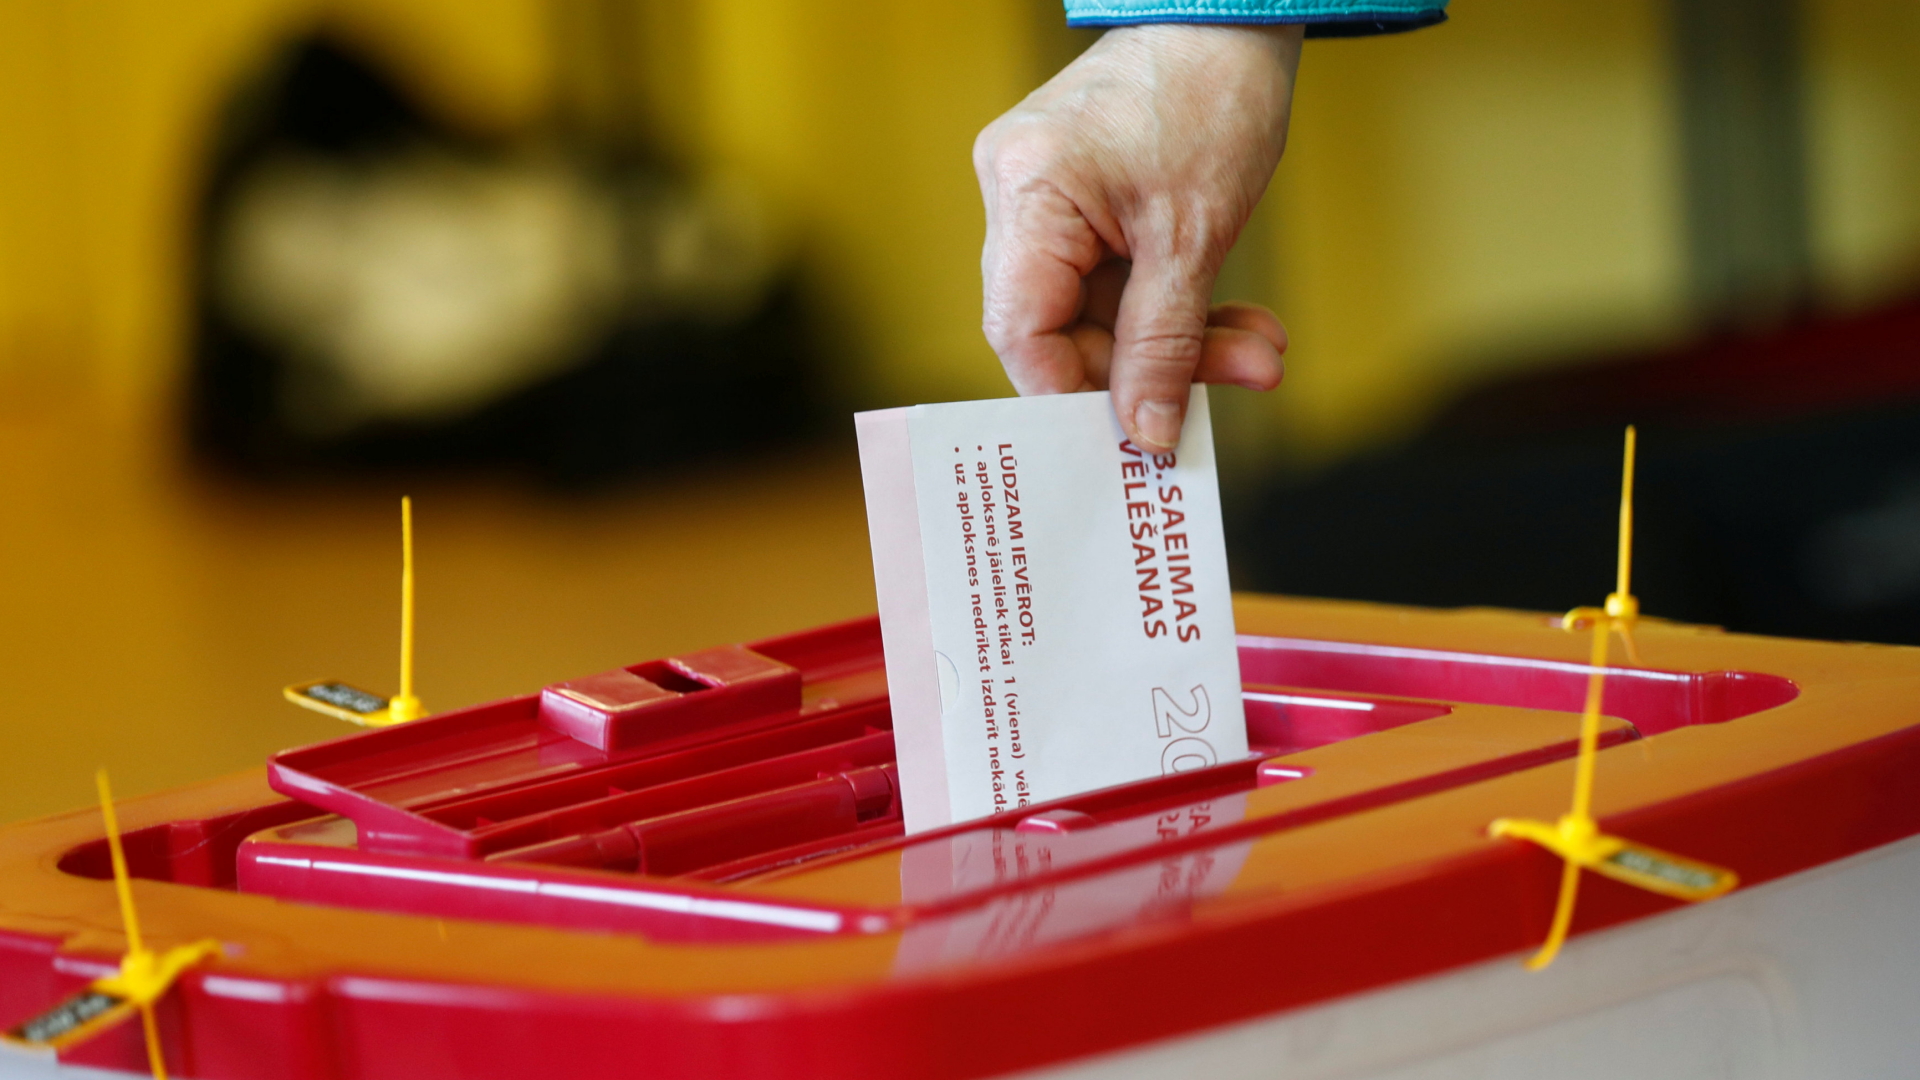 Bei der Wahl in Lettland wirft ein Mensch einen Wahlzettel in eine Wahlurne | Bildquelle: REUTERS